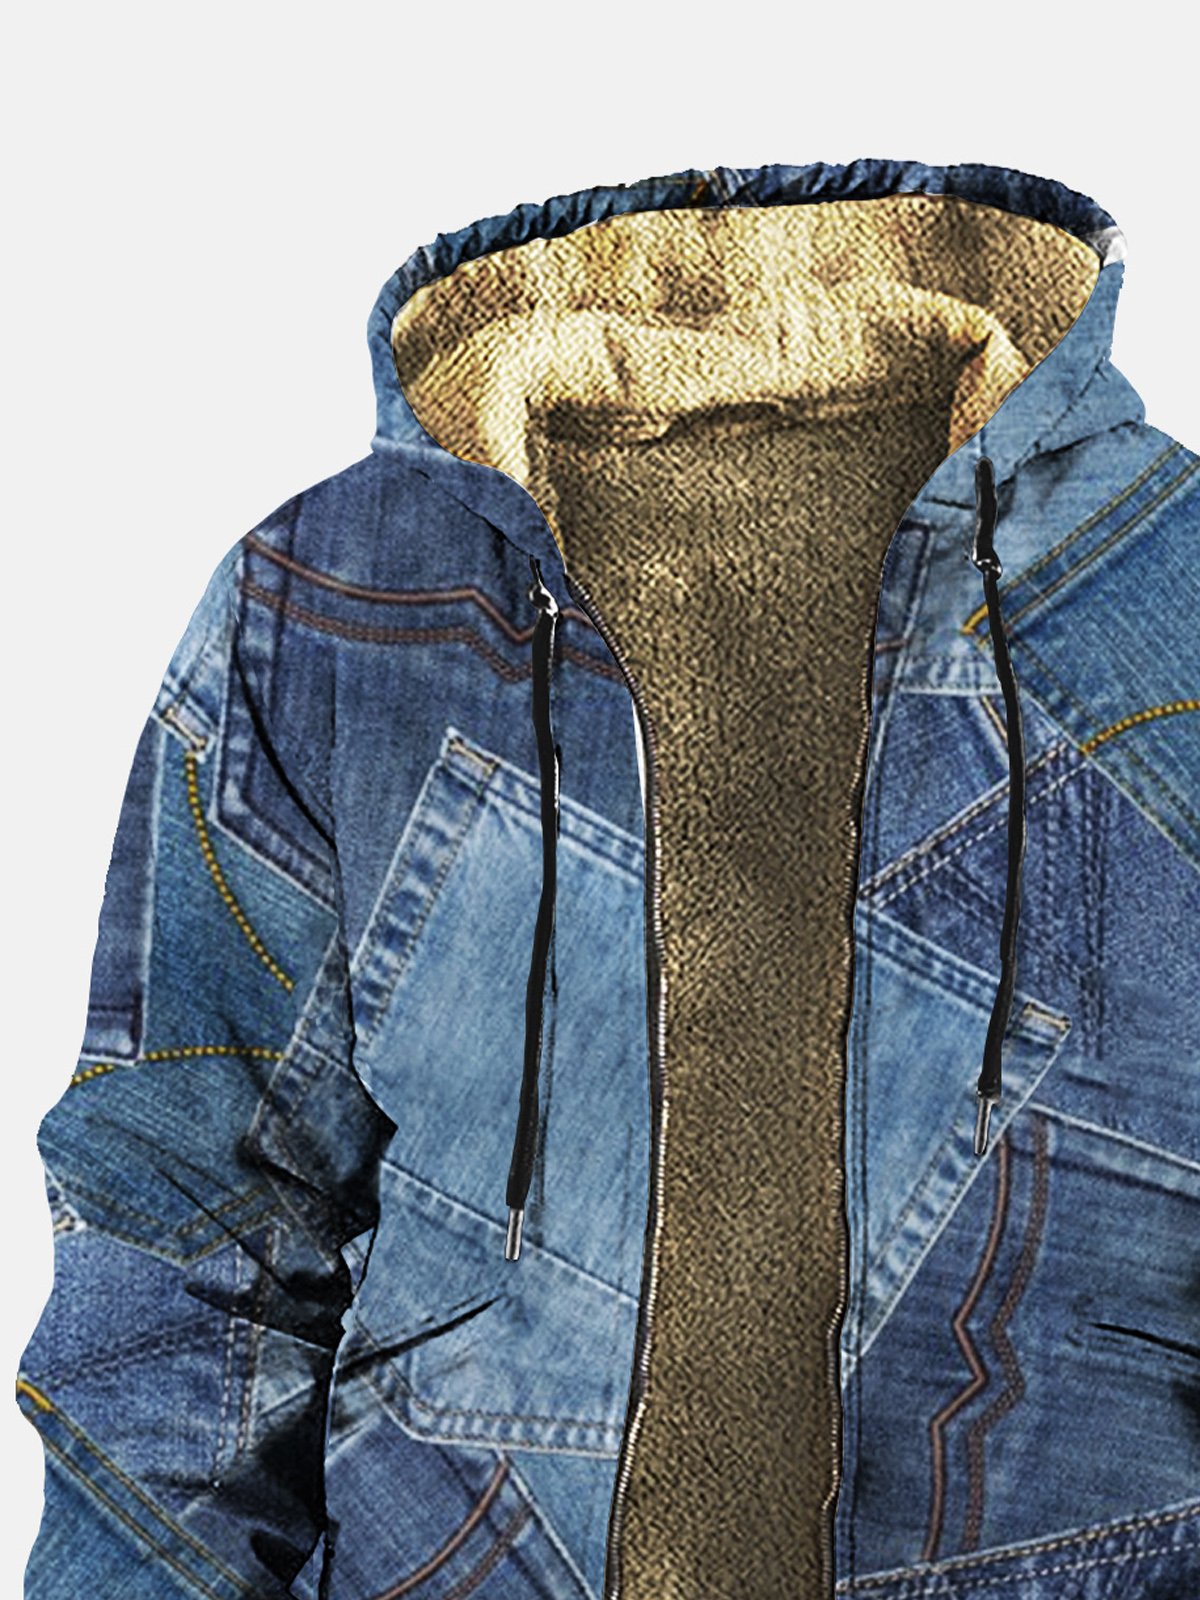 Royaura Vintage Western Denim Pocket Printed Two-Pocket Hoodies Fleece Cardigan Coat Cowboy Zip Jacket Outwear